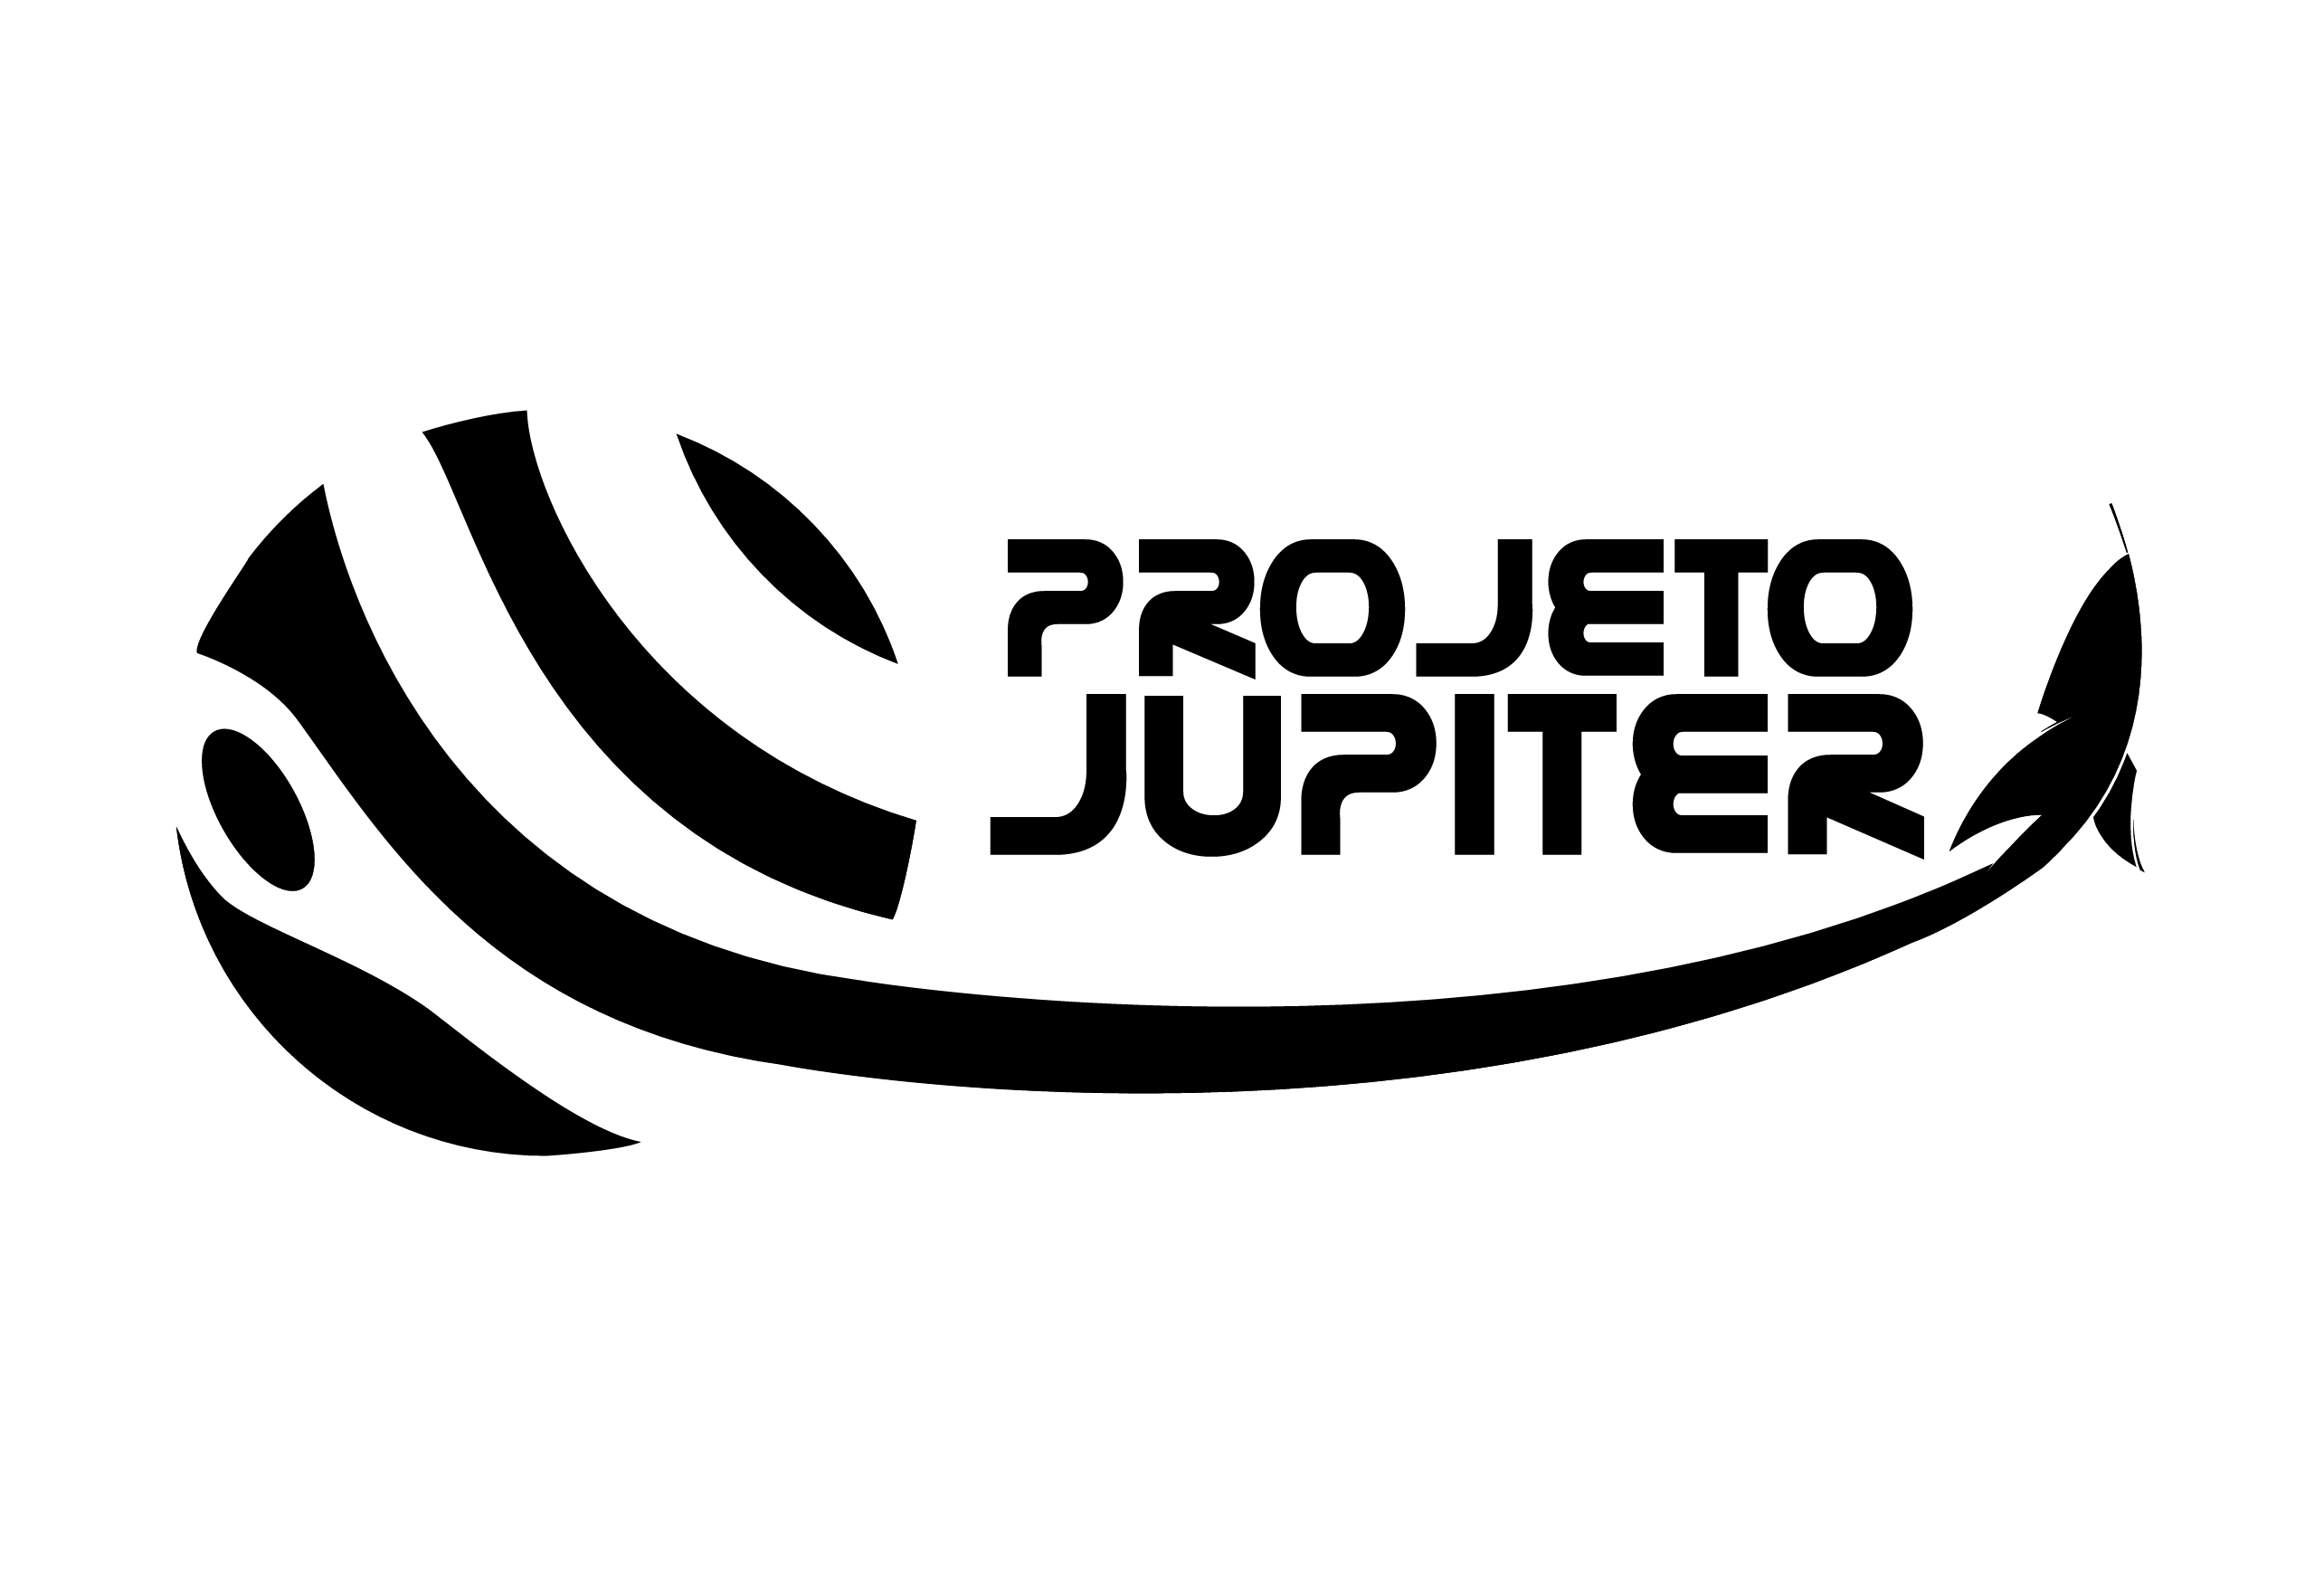 Projeto Jupiter Logo